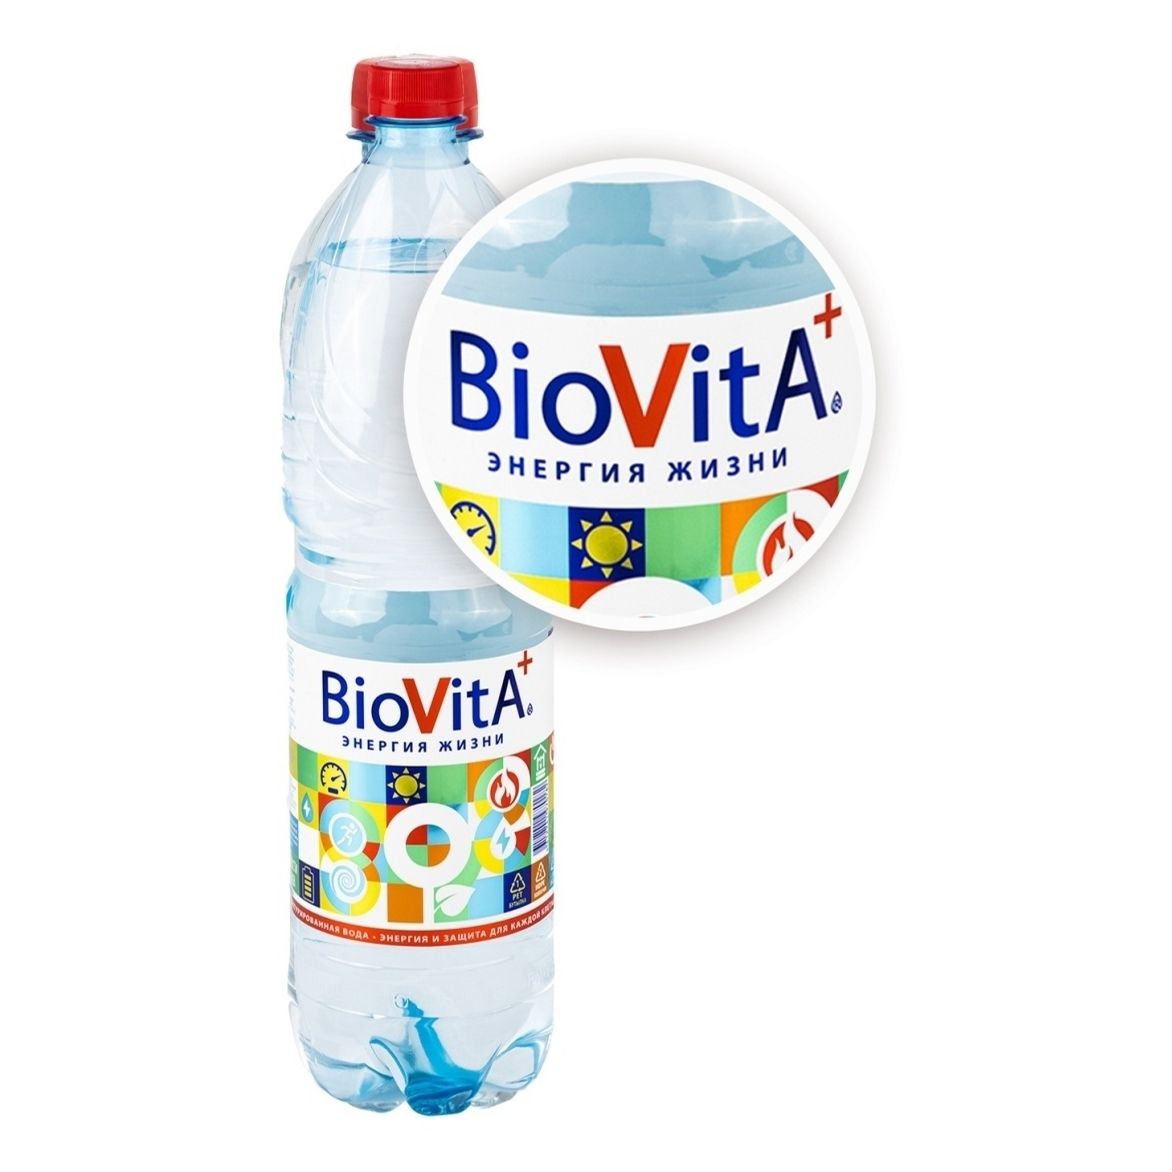 Вода минеральная BioVita негазированная 600 мл - купить с доставкой на дом в СберМаркет